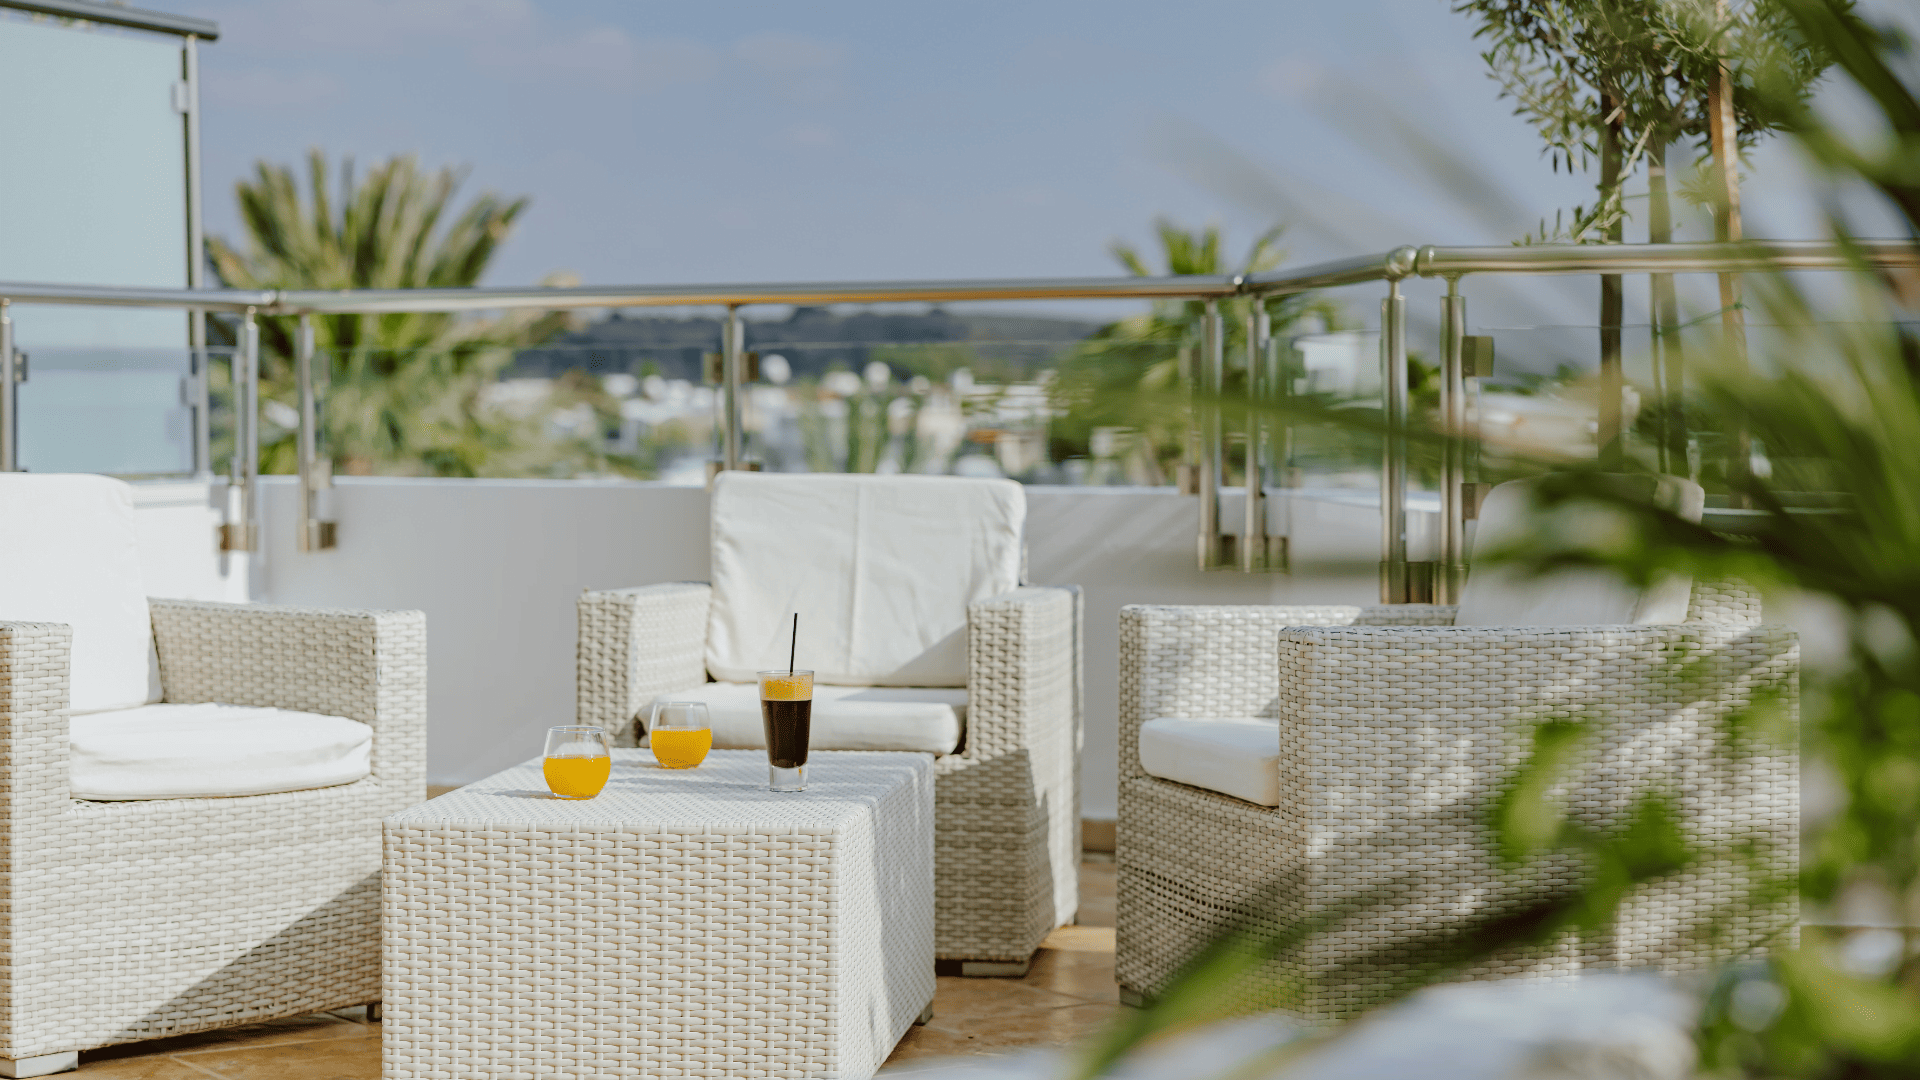 Luxuriöse Suiten mit Panoramablick auf das Meer, privatem Whirlpool im Freien und erstklassiger Terrasse.